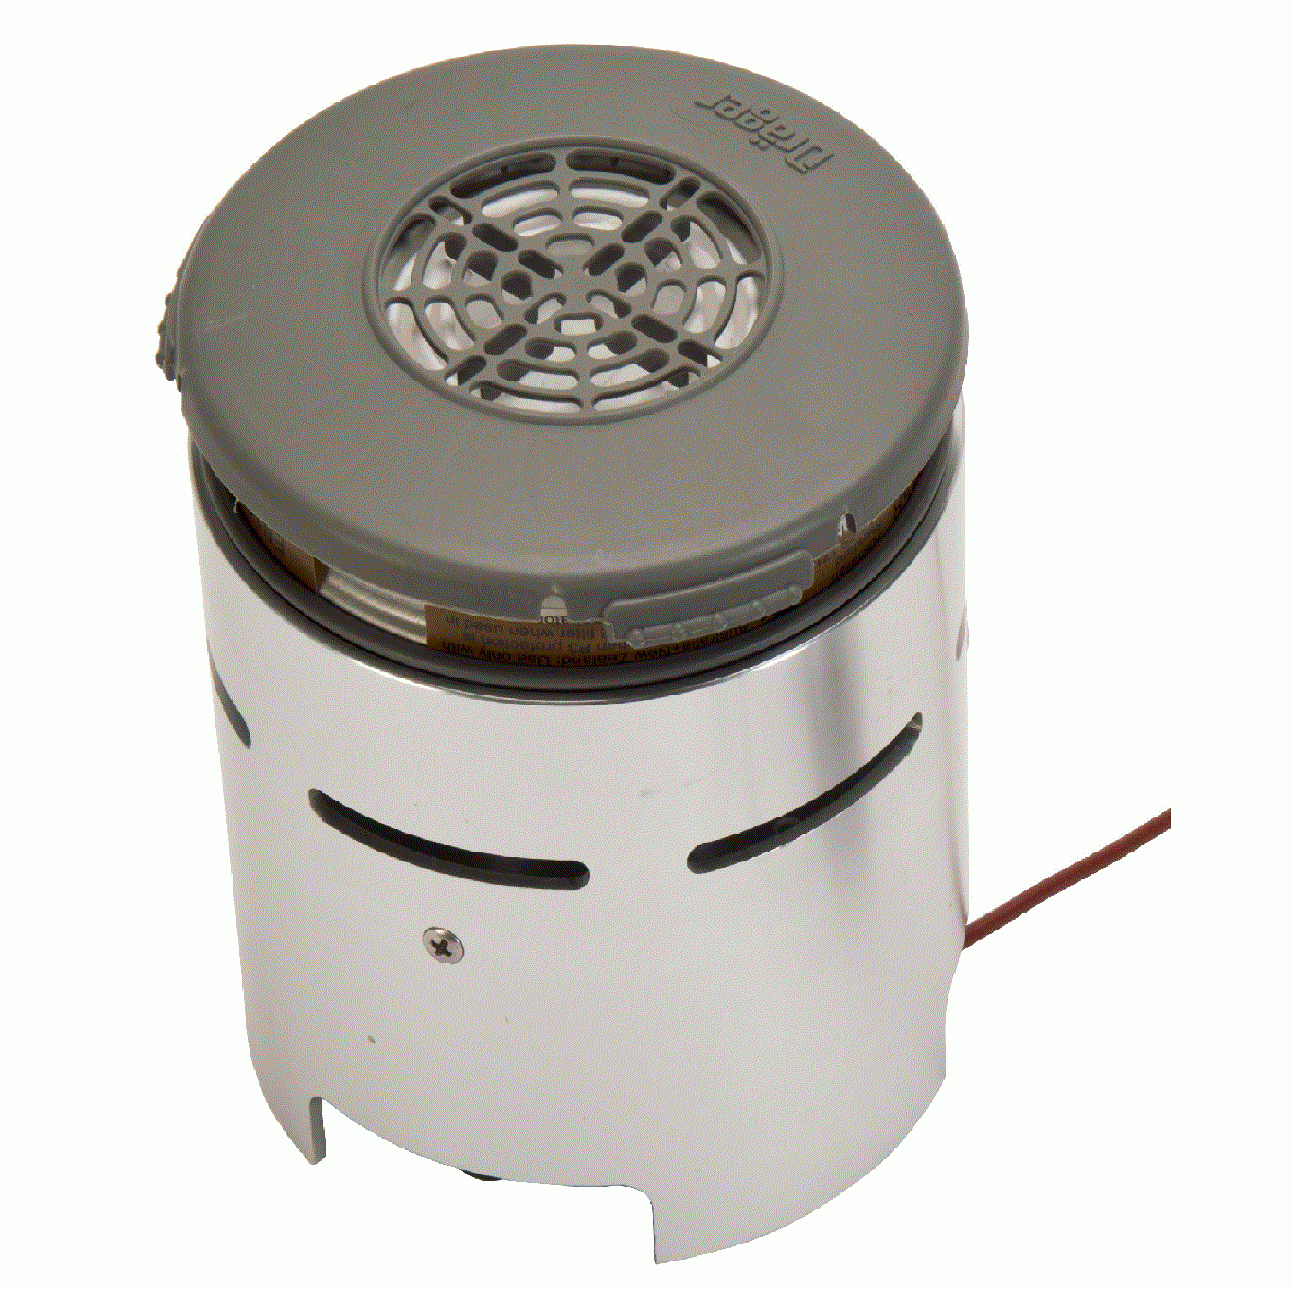 Incubator-Filter-Box